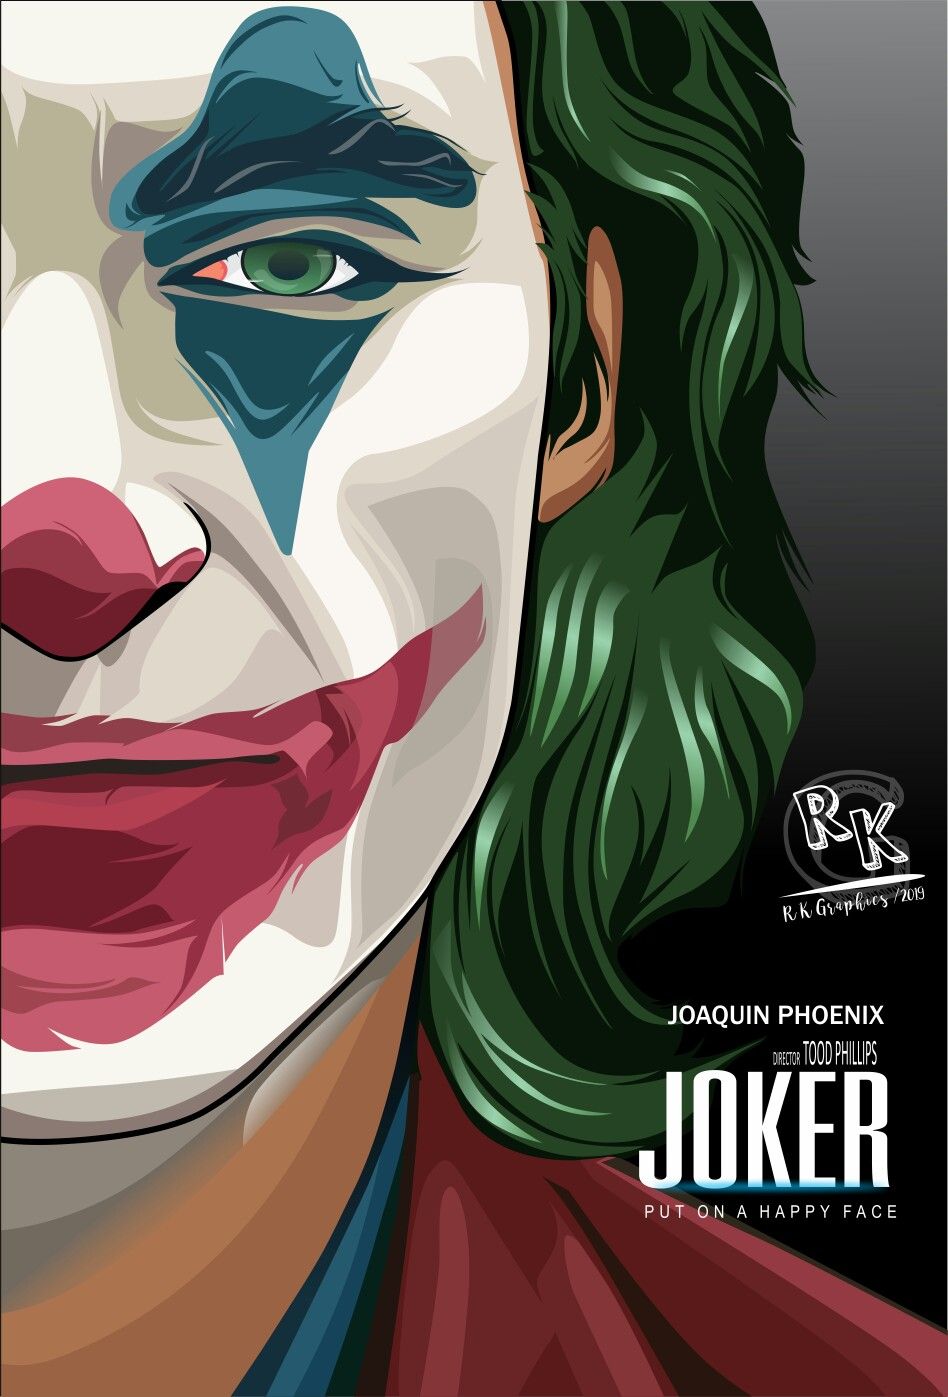 Joaquin Phoenix Joker(vector)